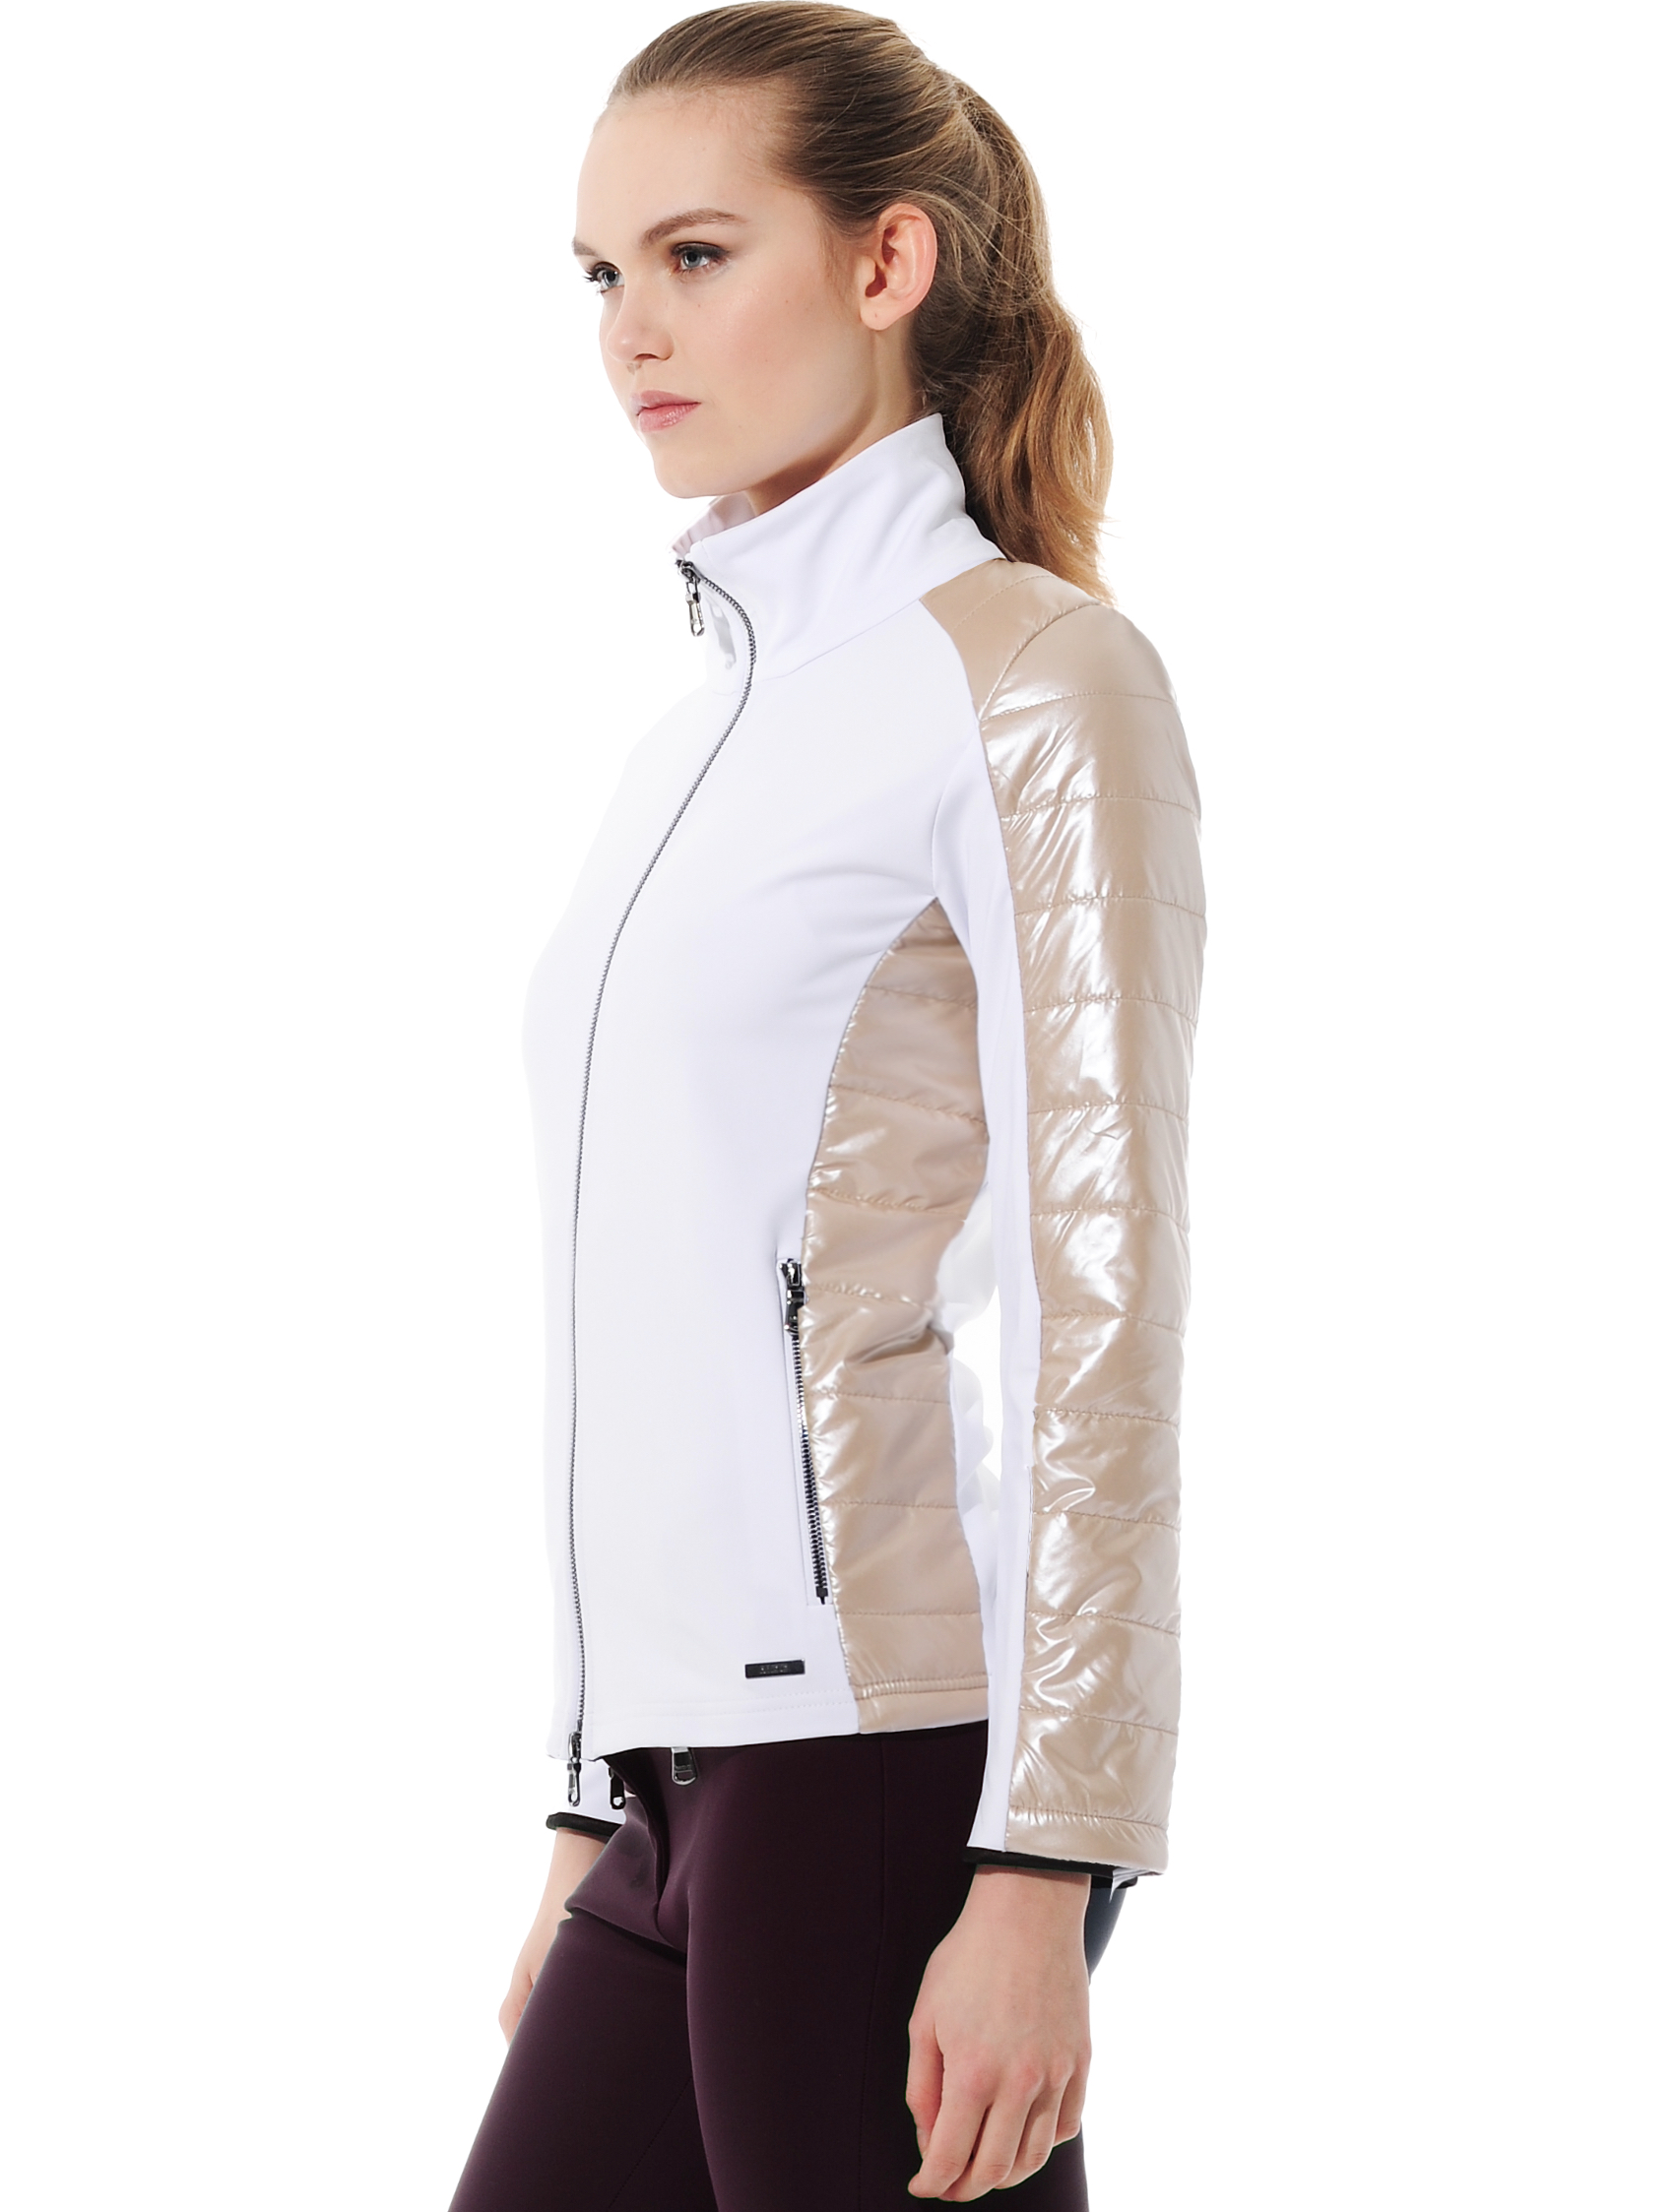 Softex stretch jacket white/platinum 